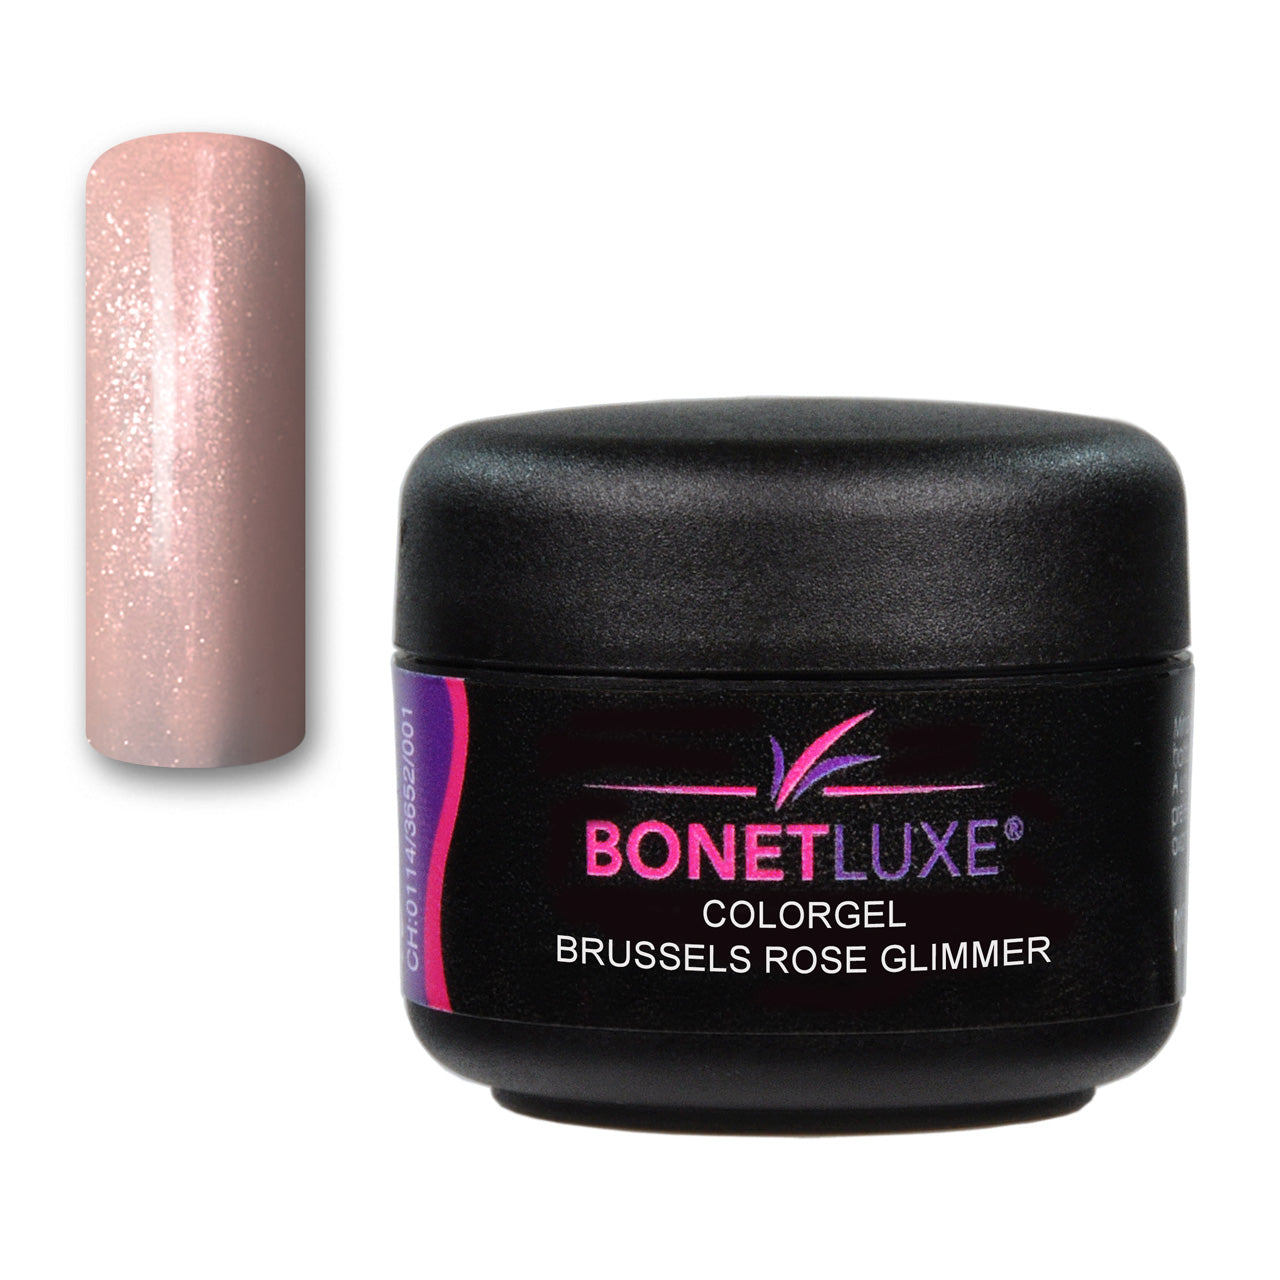 Bonetluxe Colorgel Brussels Rose Glimmer